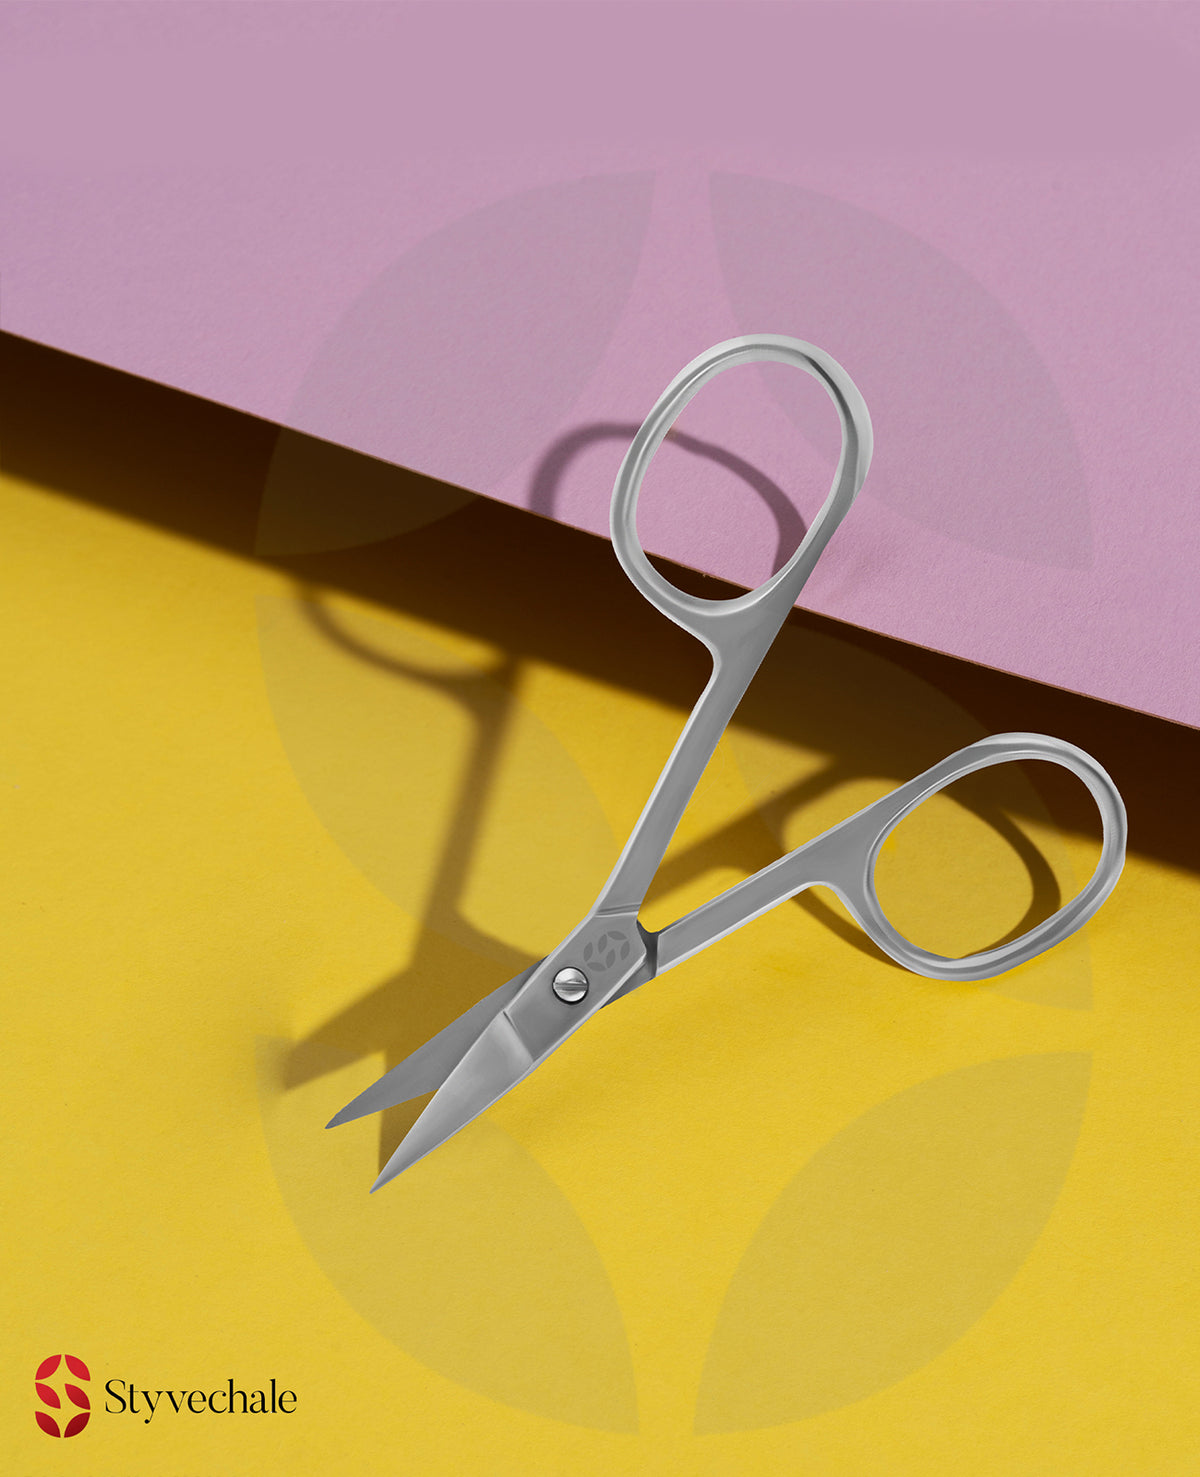 curved cuticle scissors